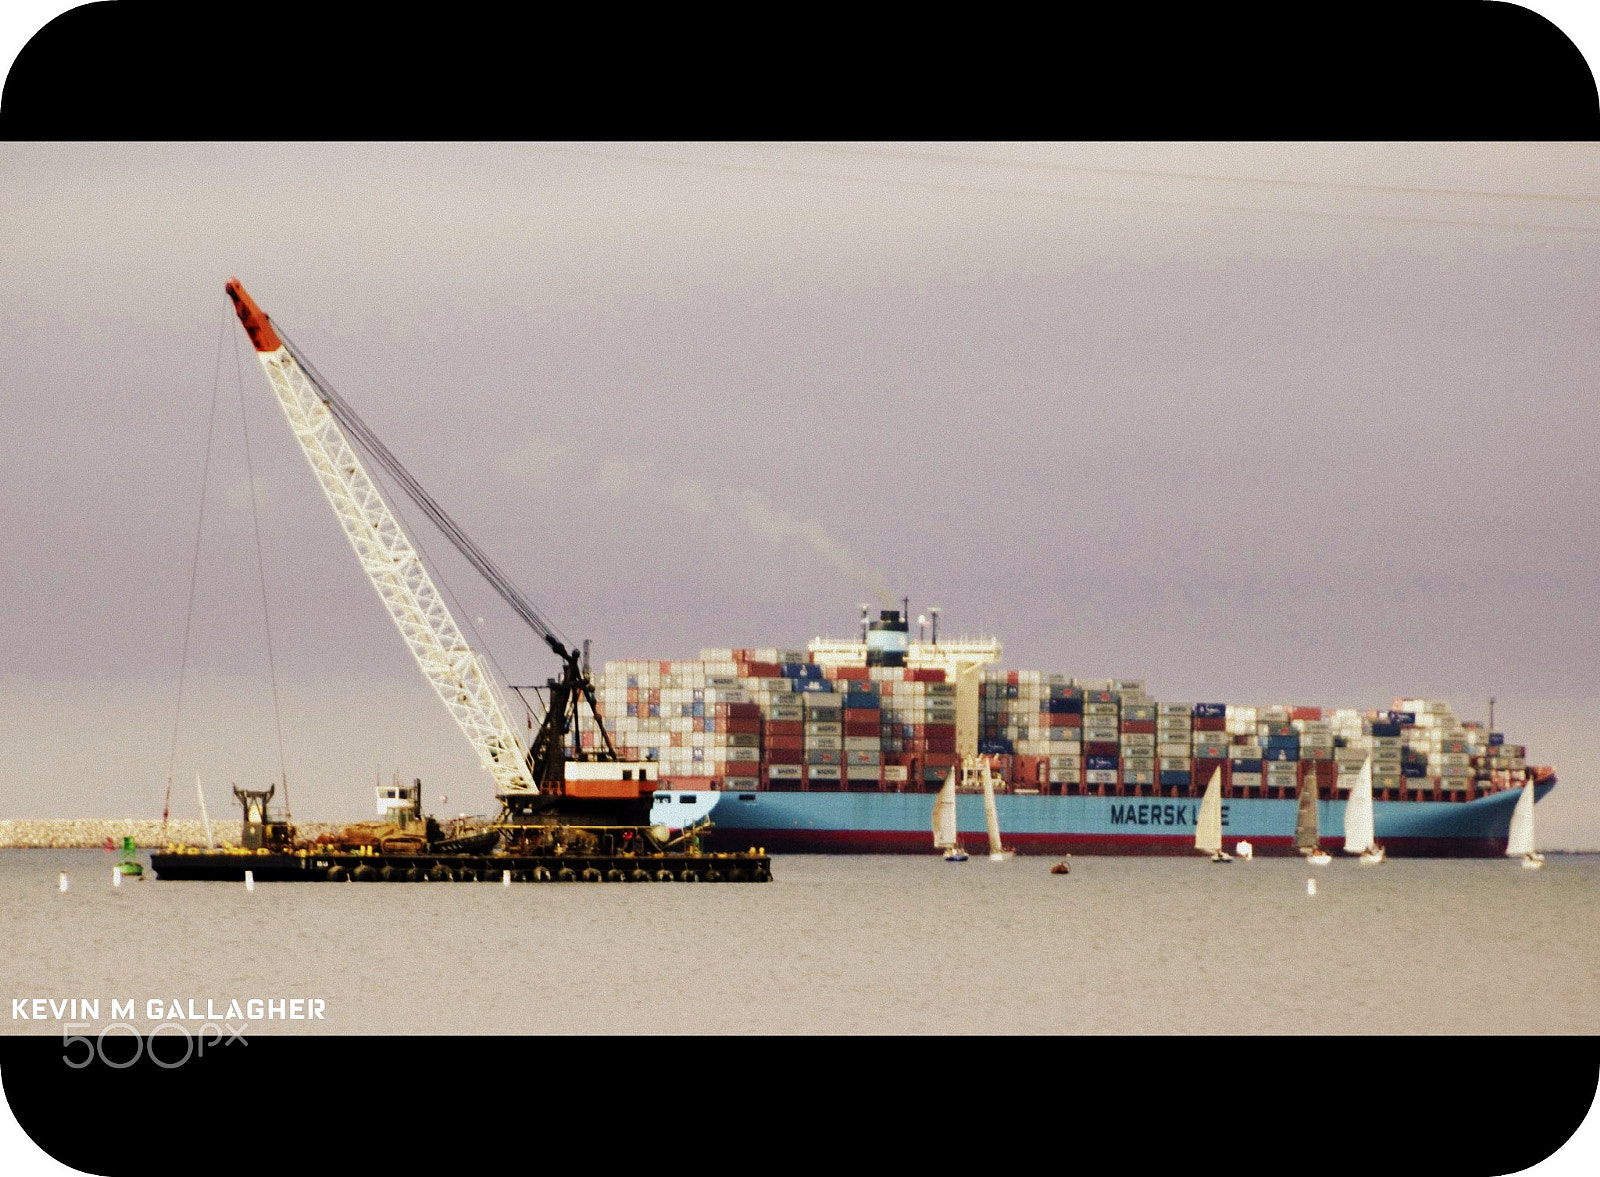 Nikon D70s + Tamron AF 28-300mm F3.5-6.3 XR Di LD Aspherical (IF) Macro sample photo. Cargo ship sailboats and a crane o photography